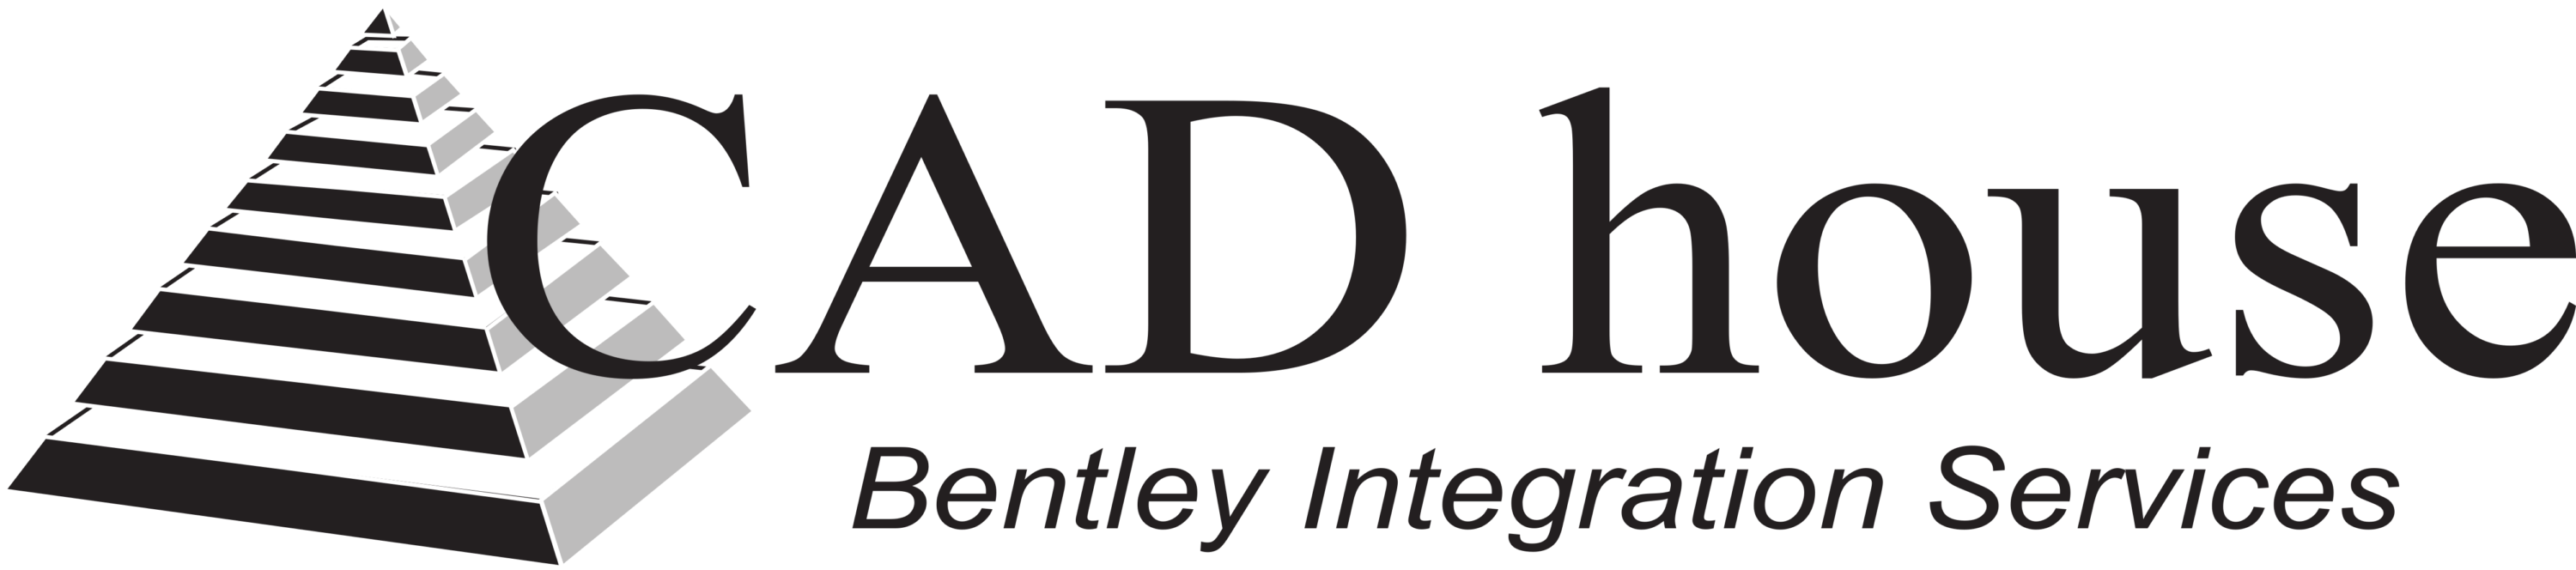 CAD House Logo